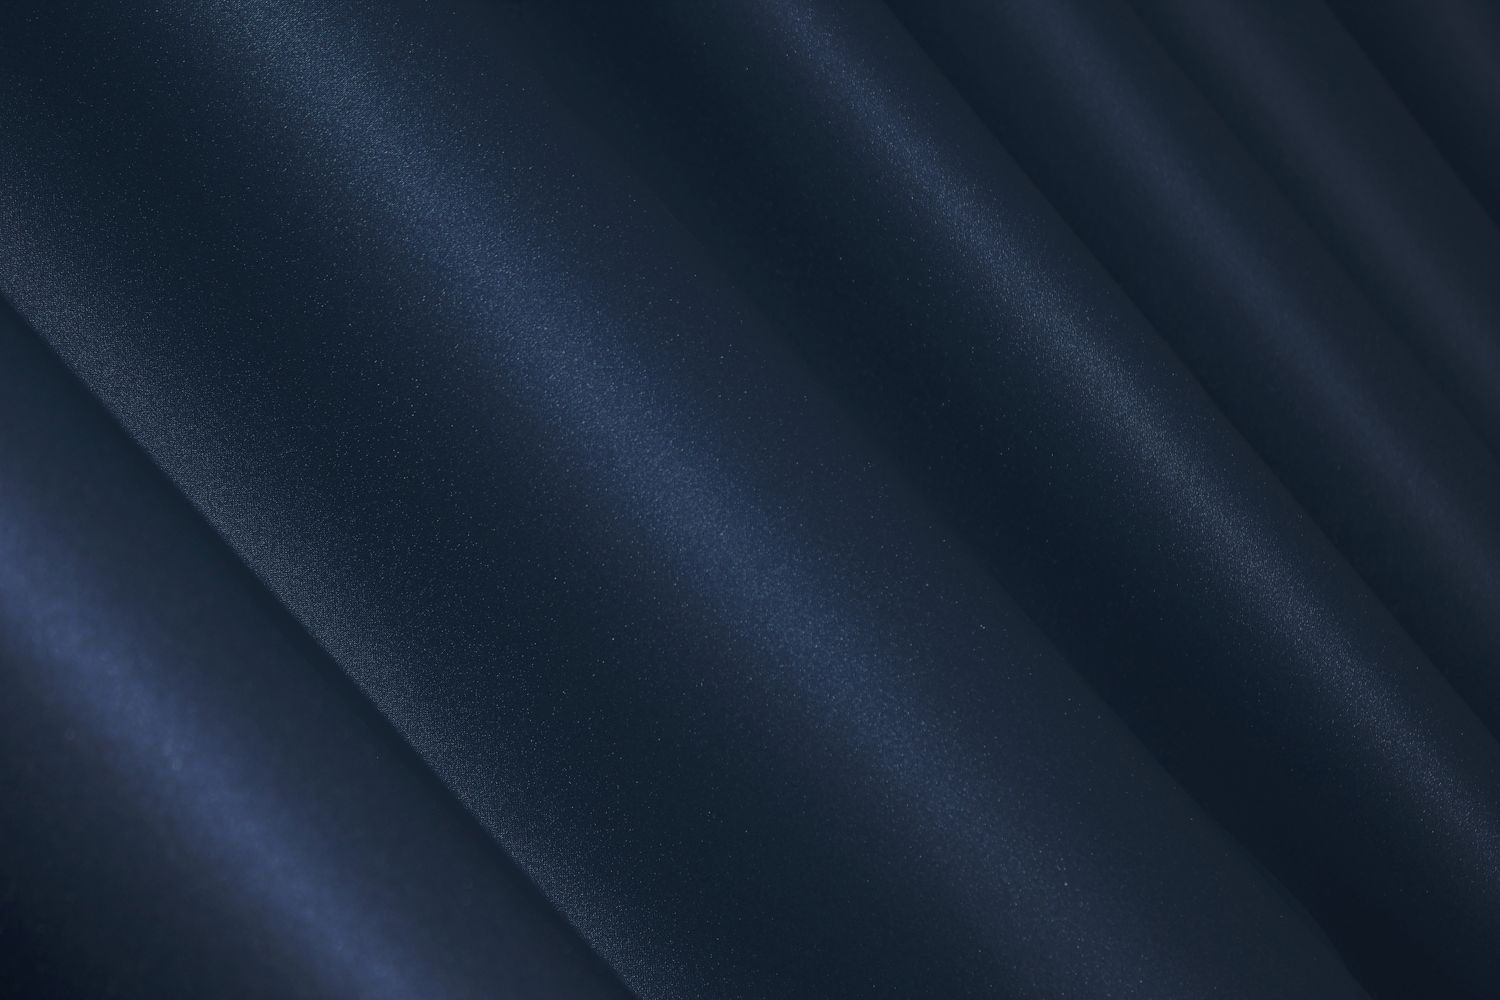 Комплект штор из ткани блэкаут, коллекция "Midnight" цвет темно-синий 1164ш, Темно-синий, Комплект штор (2 шт. 1,0х2,9 м.), Классические, Длинные, 1 м., 2,9 м., 100, 290, 1,5 - 2 м., В комплекте 2 шт., Тесьма